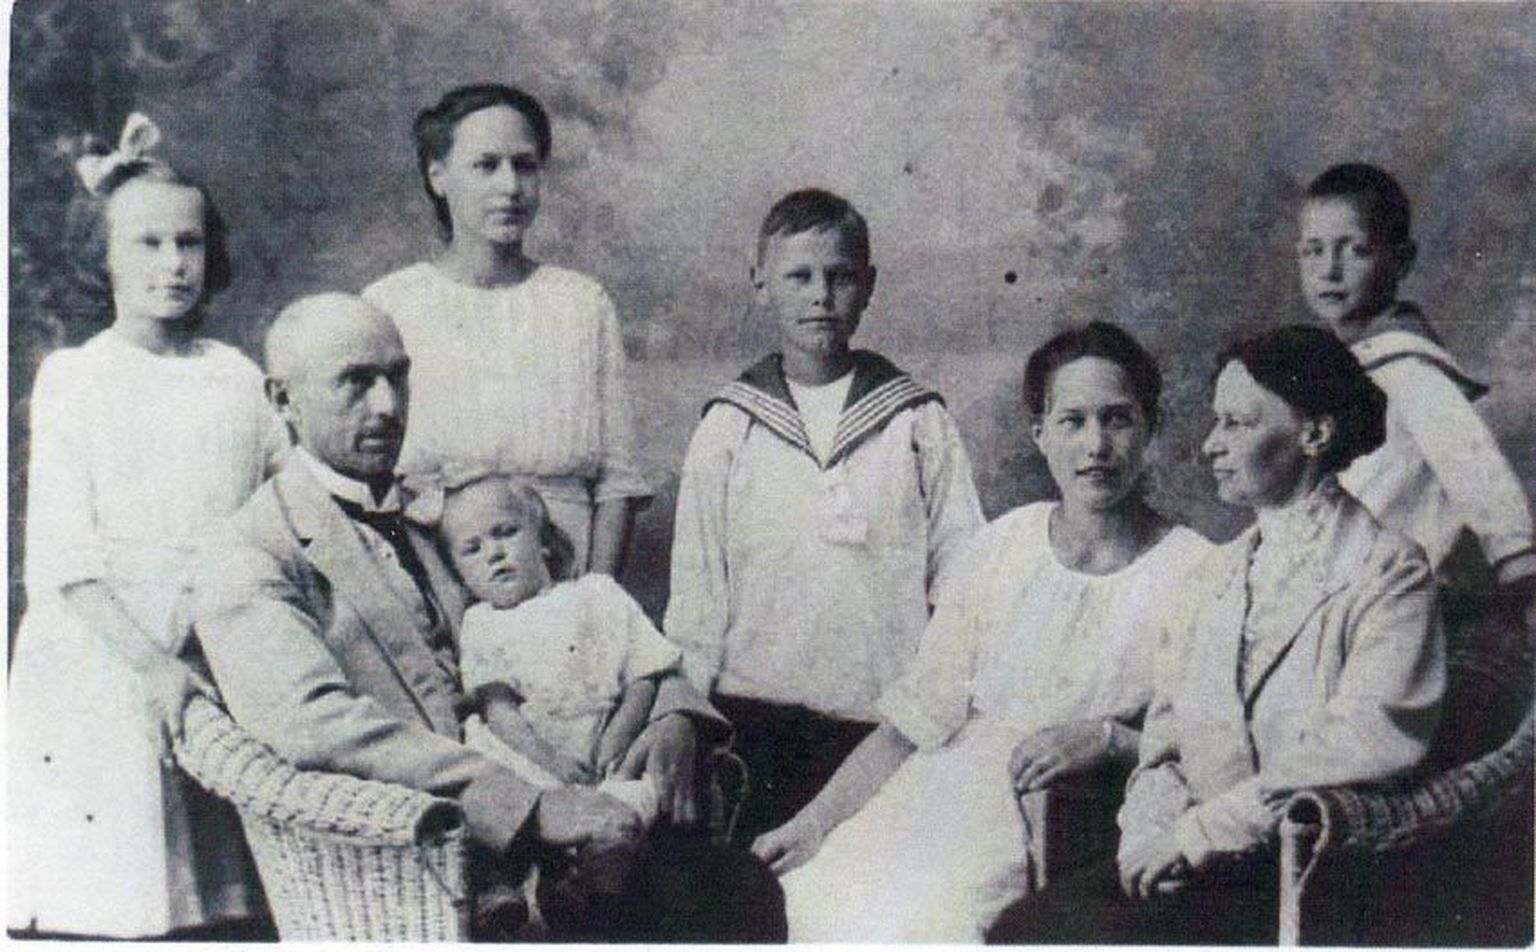 Pärast Rakvere mõisa riigistamist 1919. aastal elas Rennenkampffide pere eesotsas perepea Karli ja tema kaasa Gerdaga Vaos.